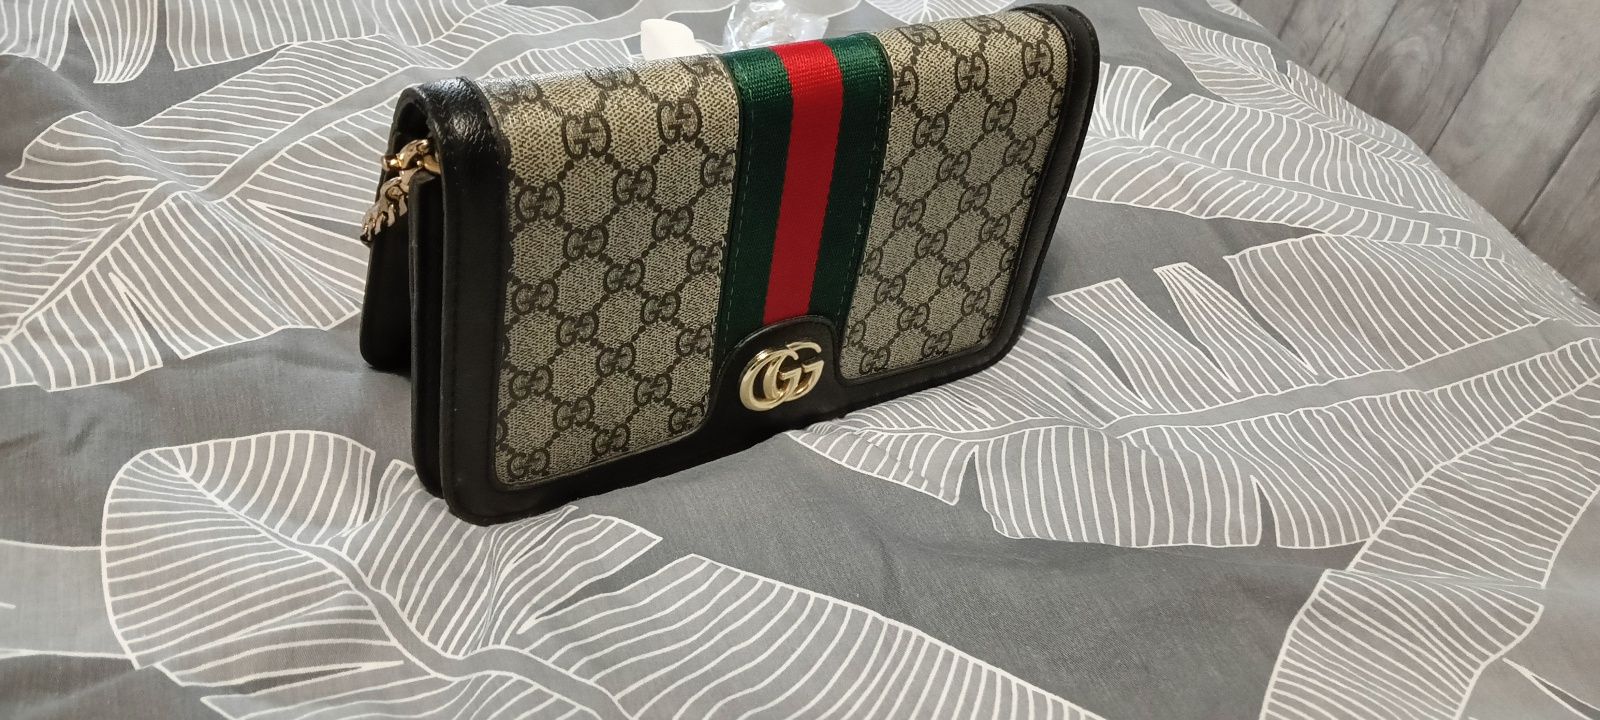 Nowa torebka jak Gucci